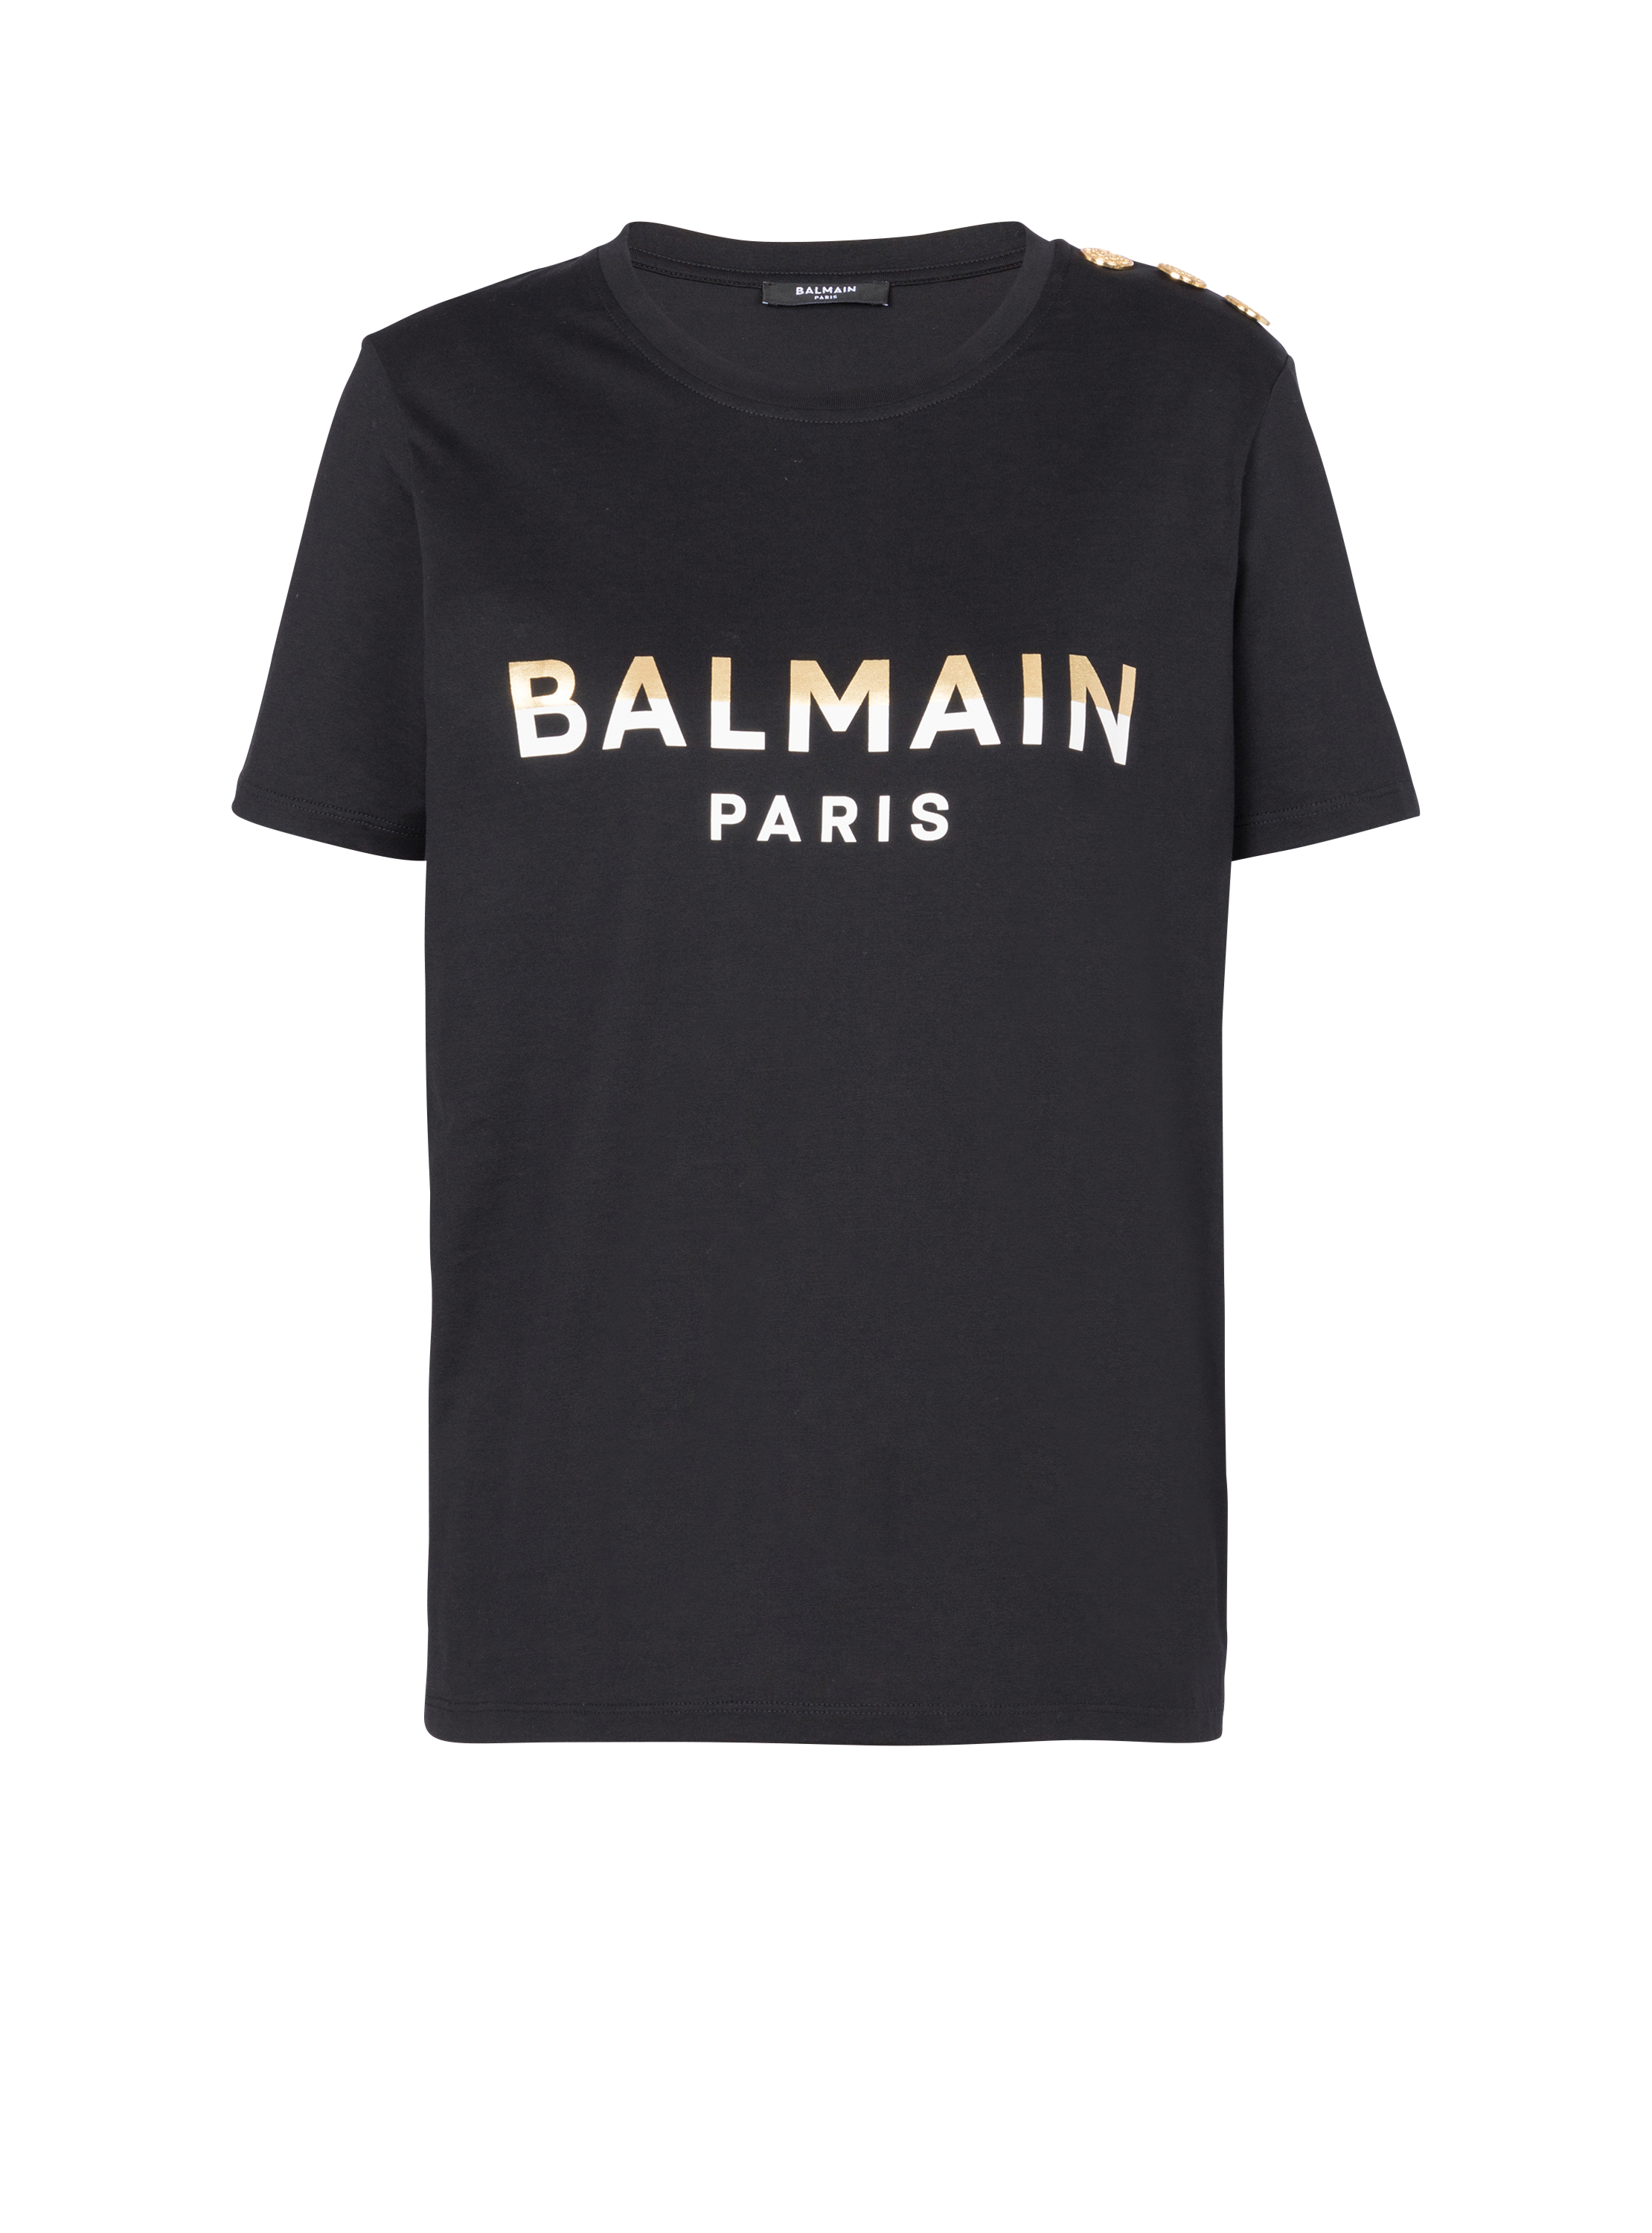 Camiseta corta con botones Balmain Paris, negro, hi-res